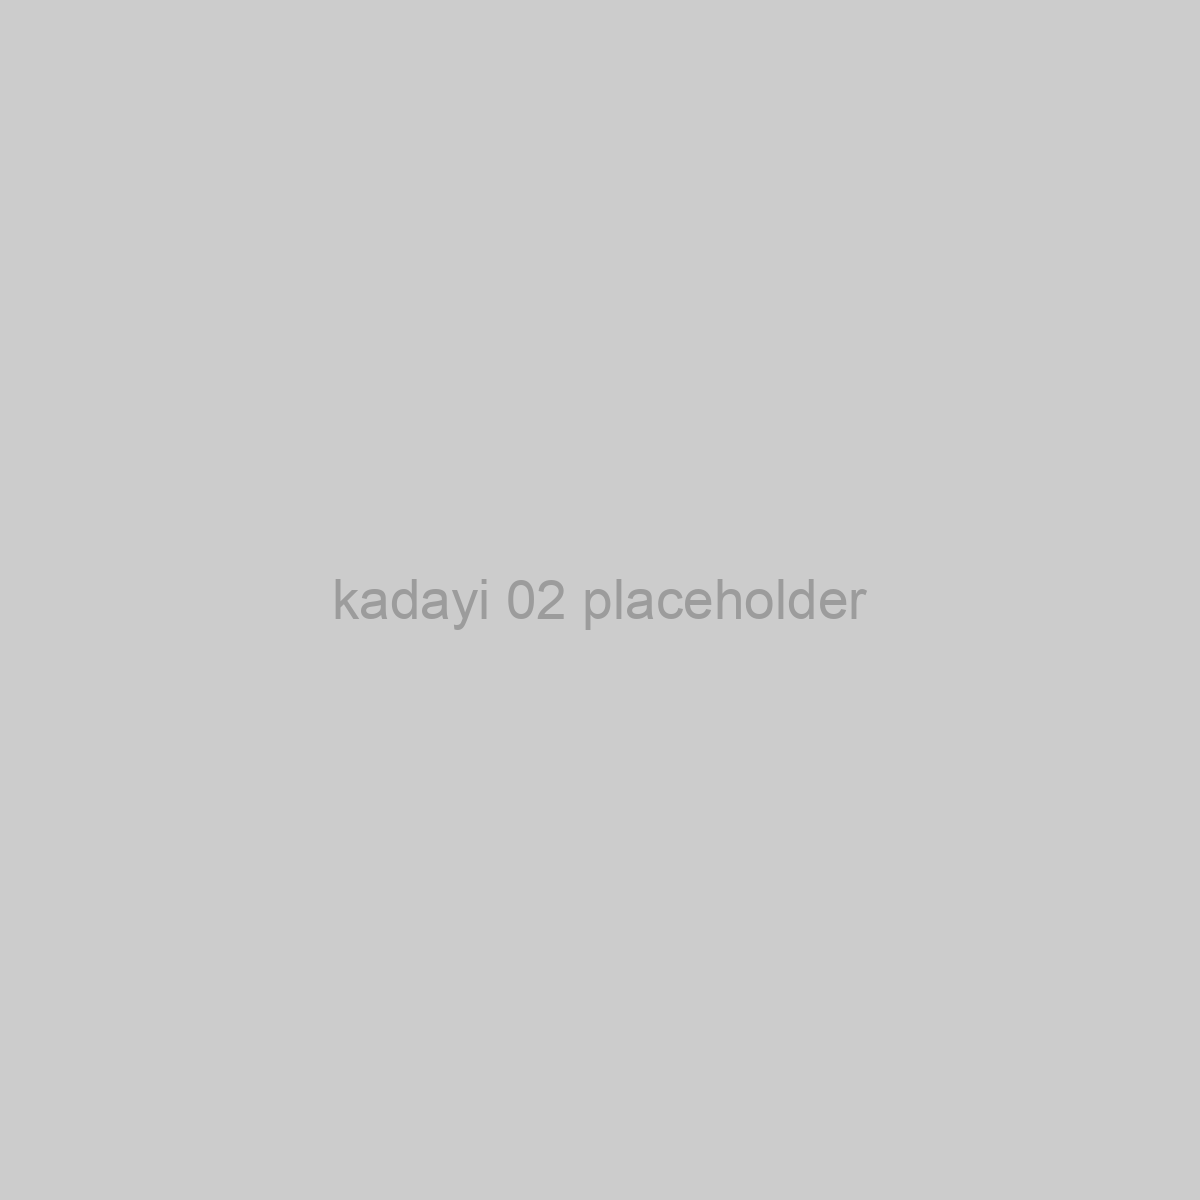 kadayi 02 Placeholder Image